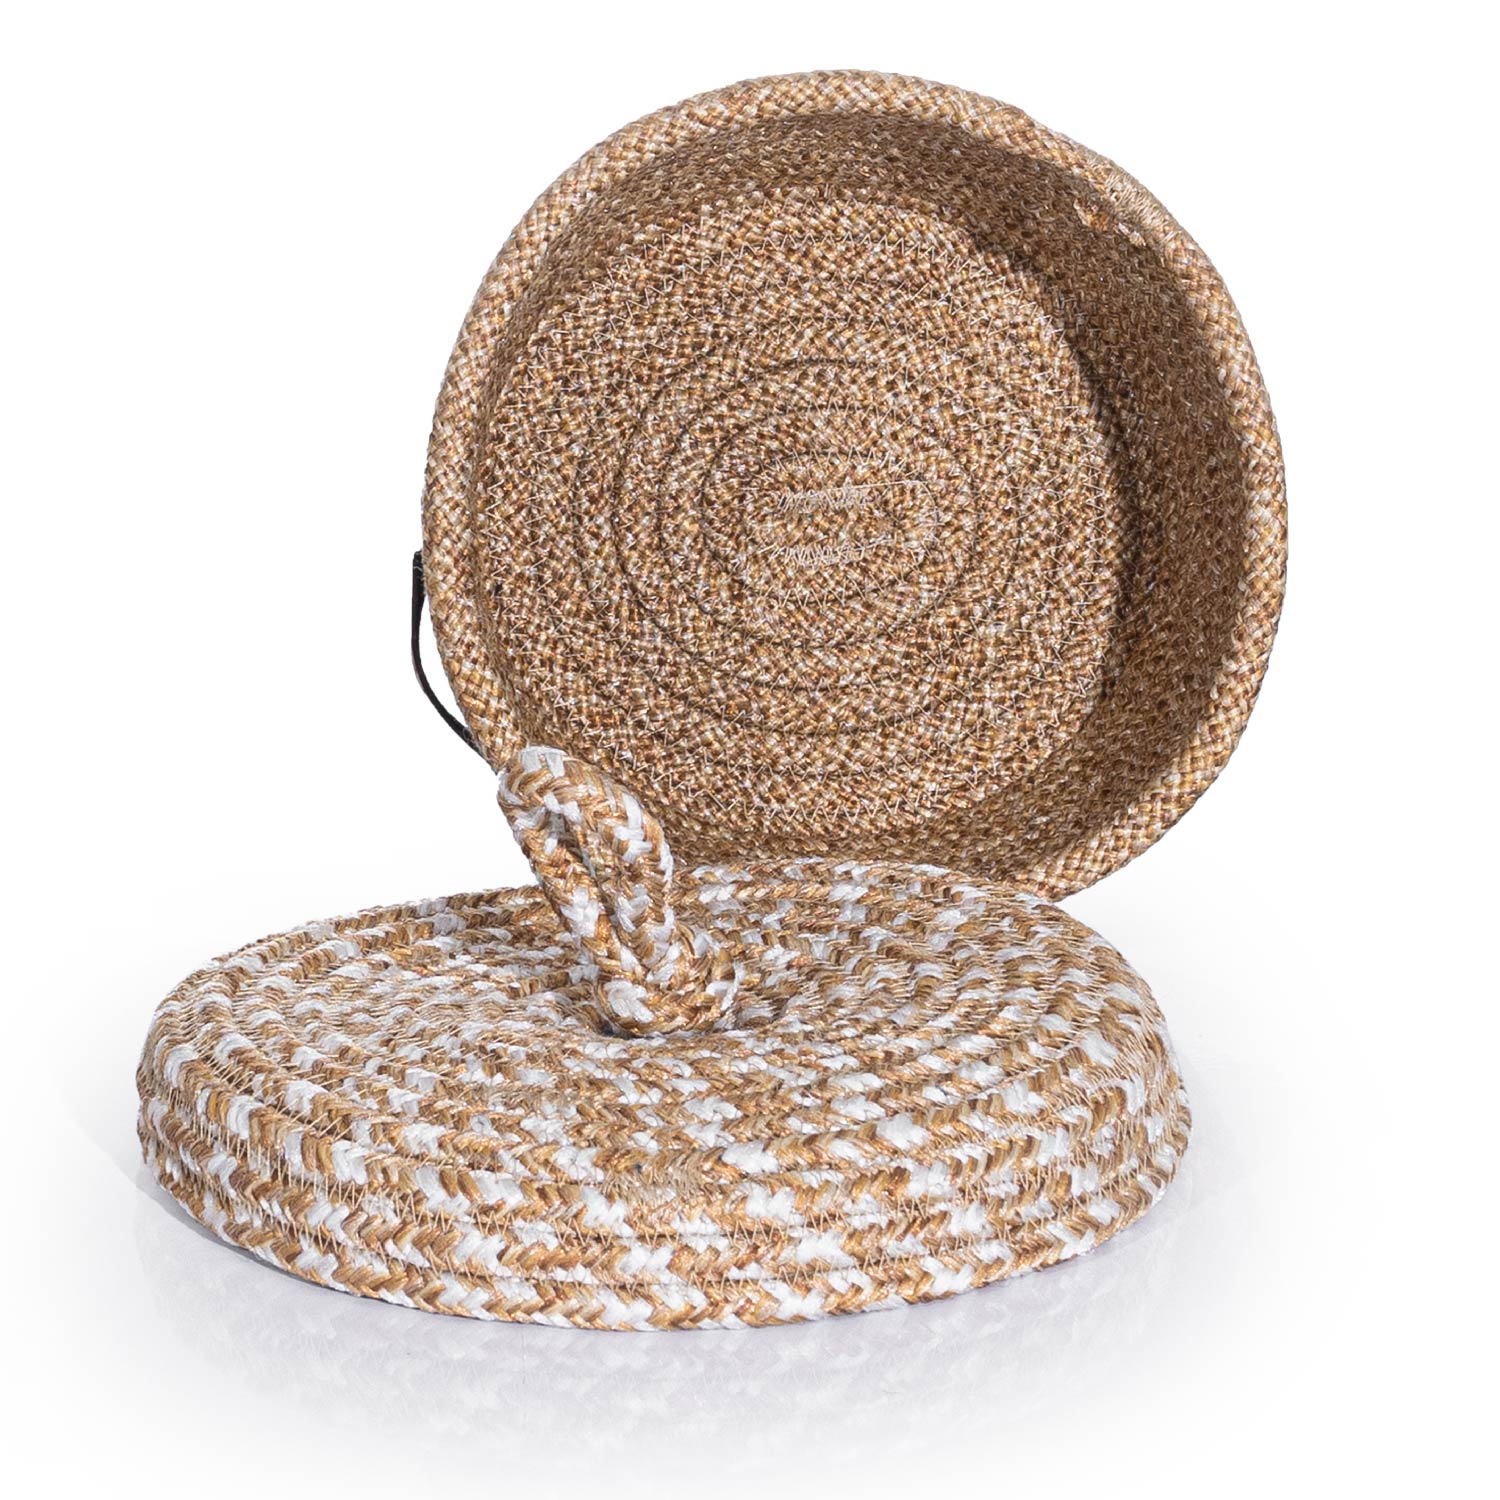 Cesta Lid Handmade Cotton Natural Beige Wicker Decorative Basket 15cm